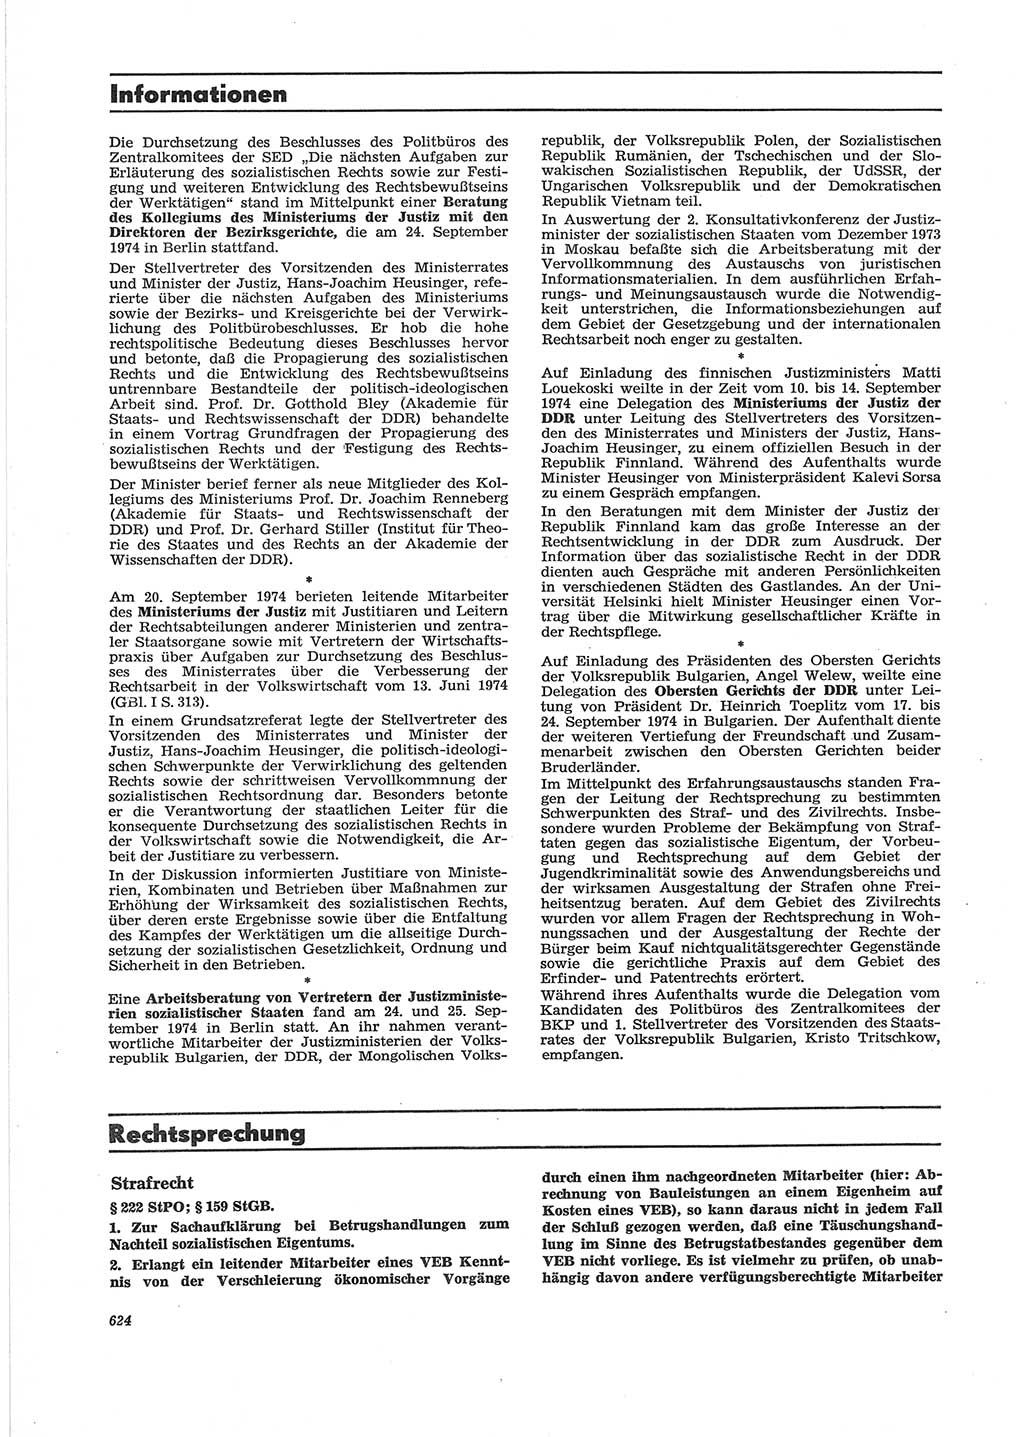 Neue Justiz (NJ), Zeitschrift für Recht und Rechtswissenschaft [Deutsche Demokratische Republik (DDR)], 28. Jahrgang 1974, Seite 624 (NJ DDR 1974, S. 624)